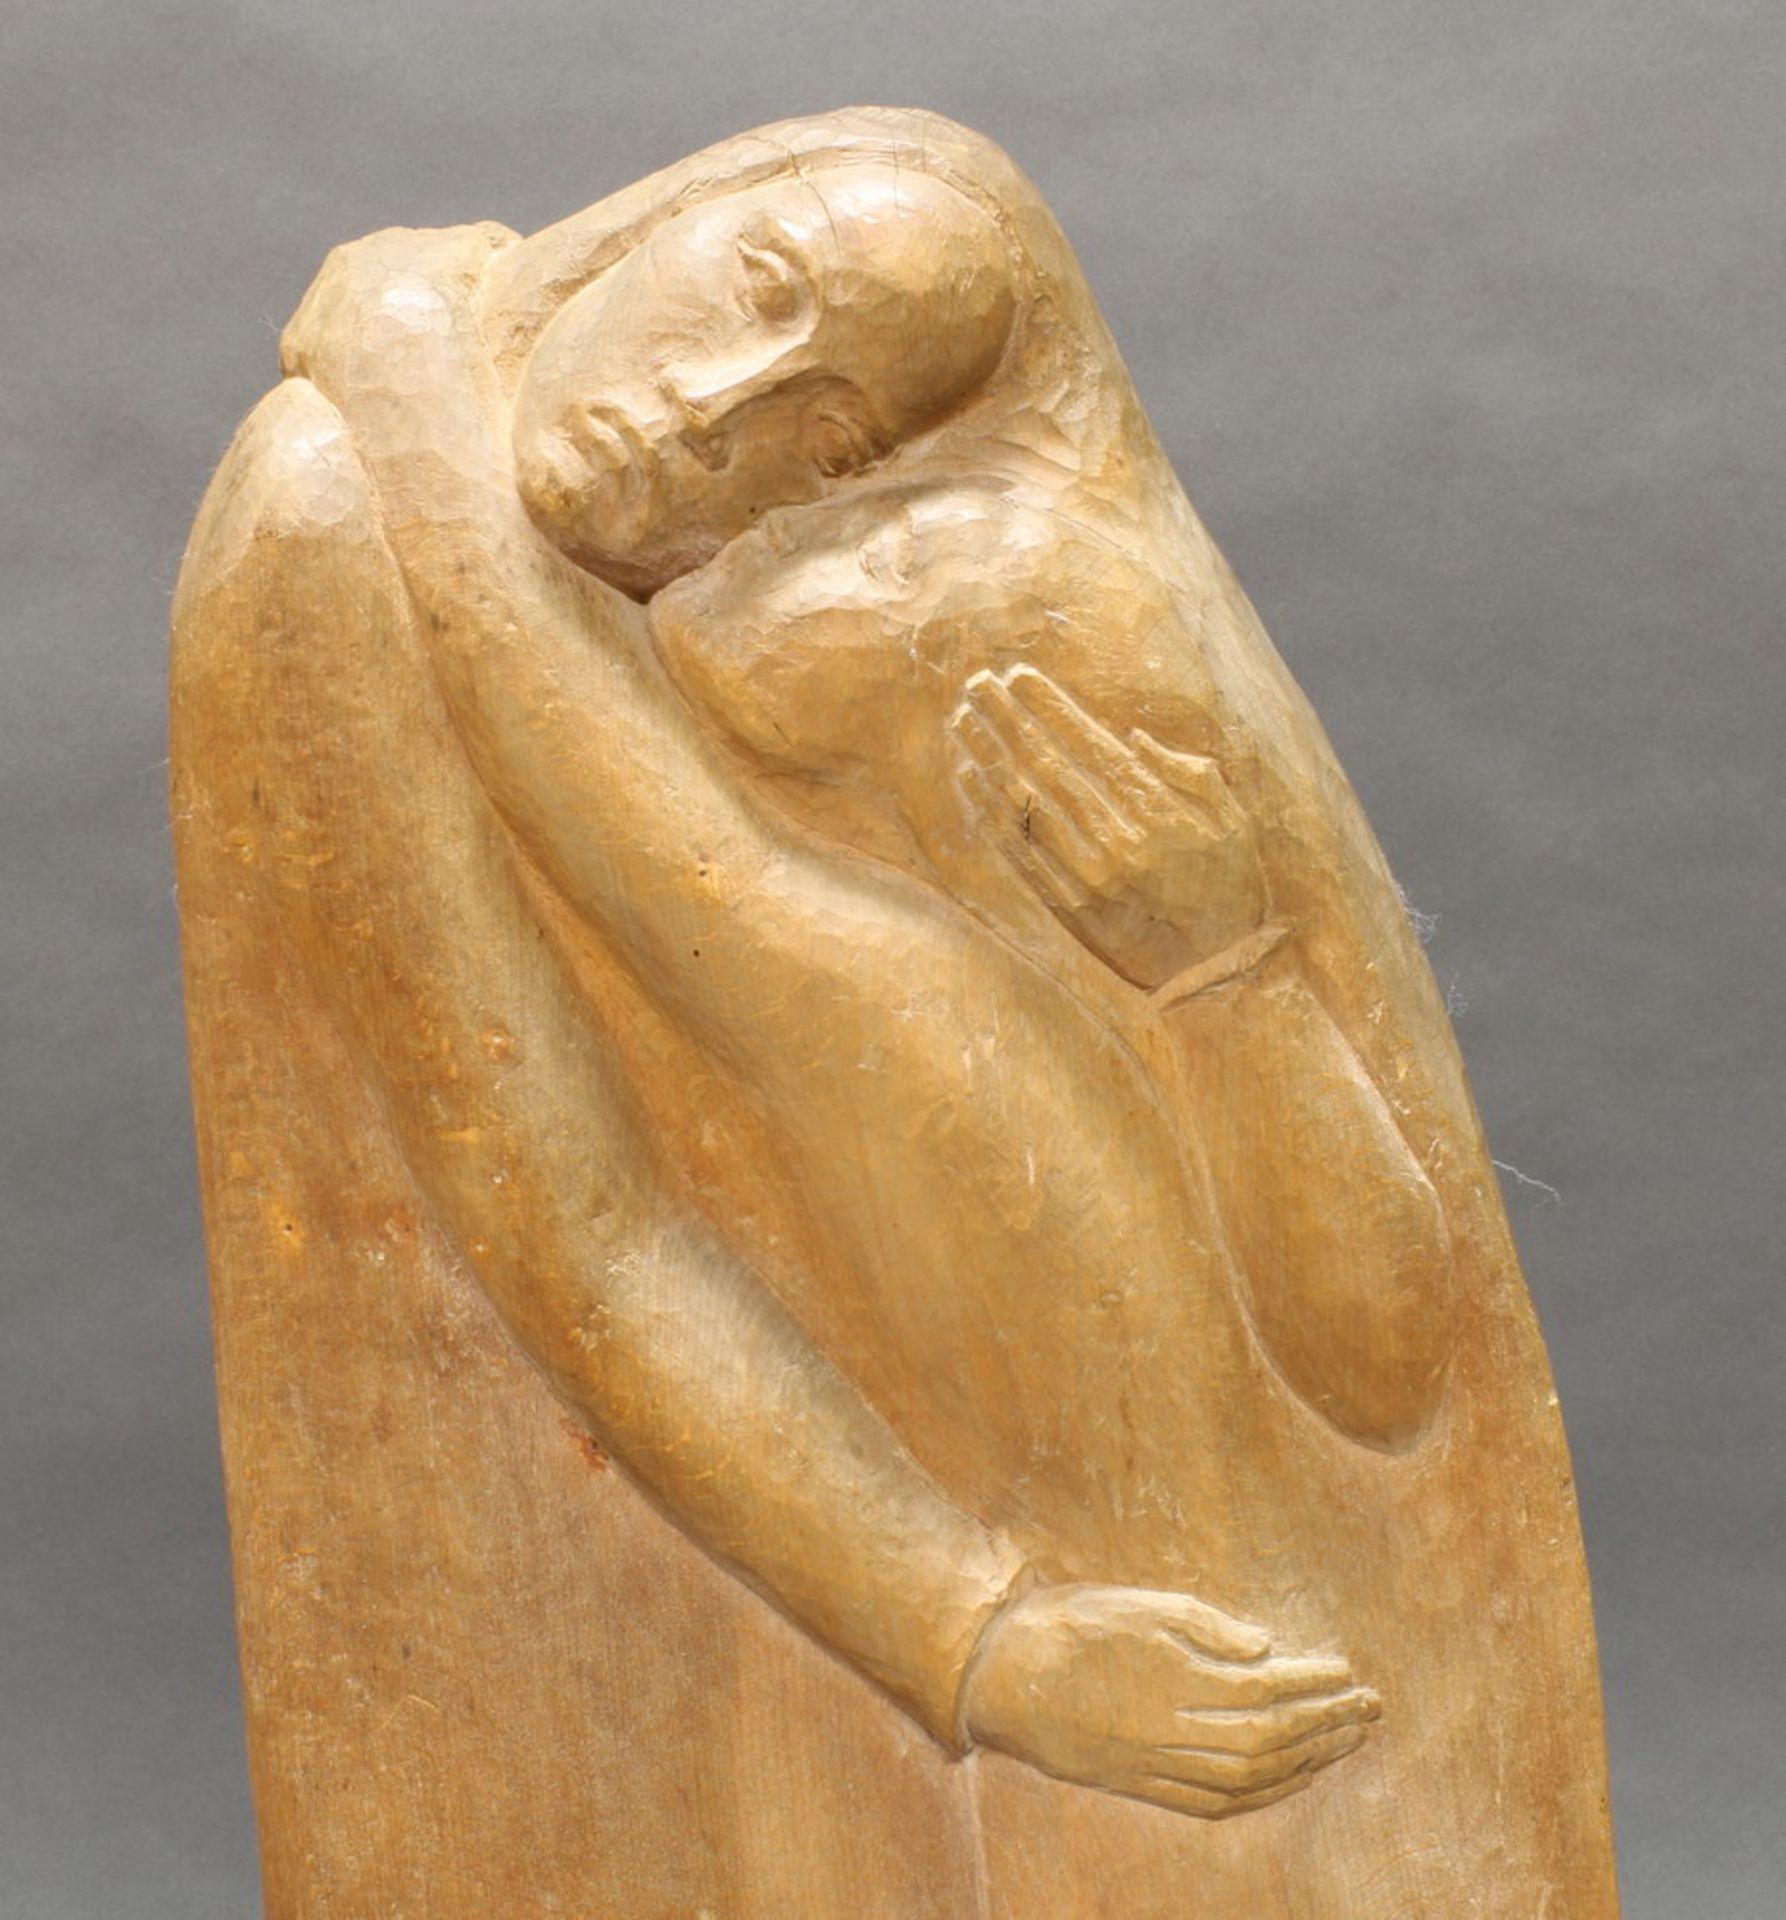 Skulptur, Holz geschnitzt, "Versöhnung", verso bezeichnet SLvB, 1940, Buchenholz, 70 cm hoch. - Image 2 of 3